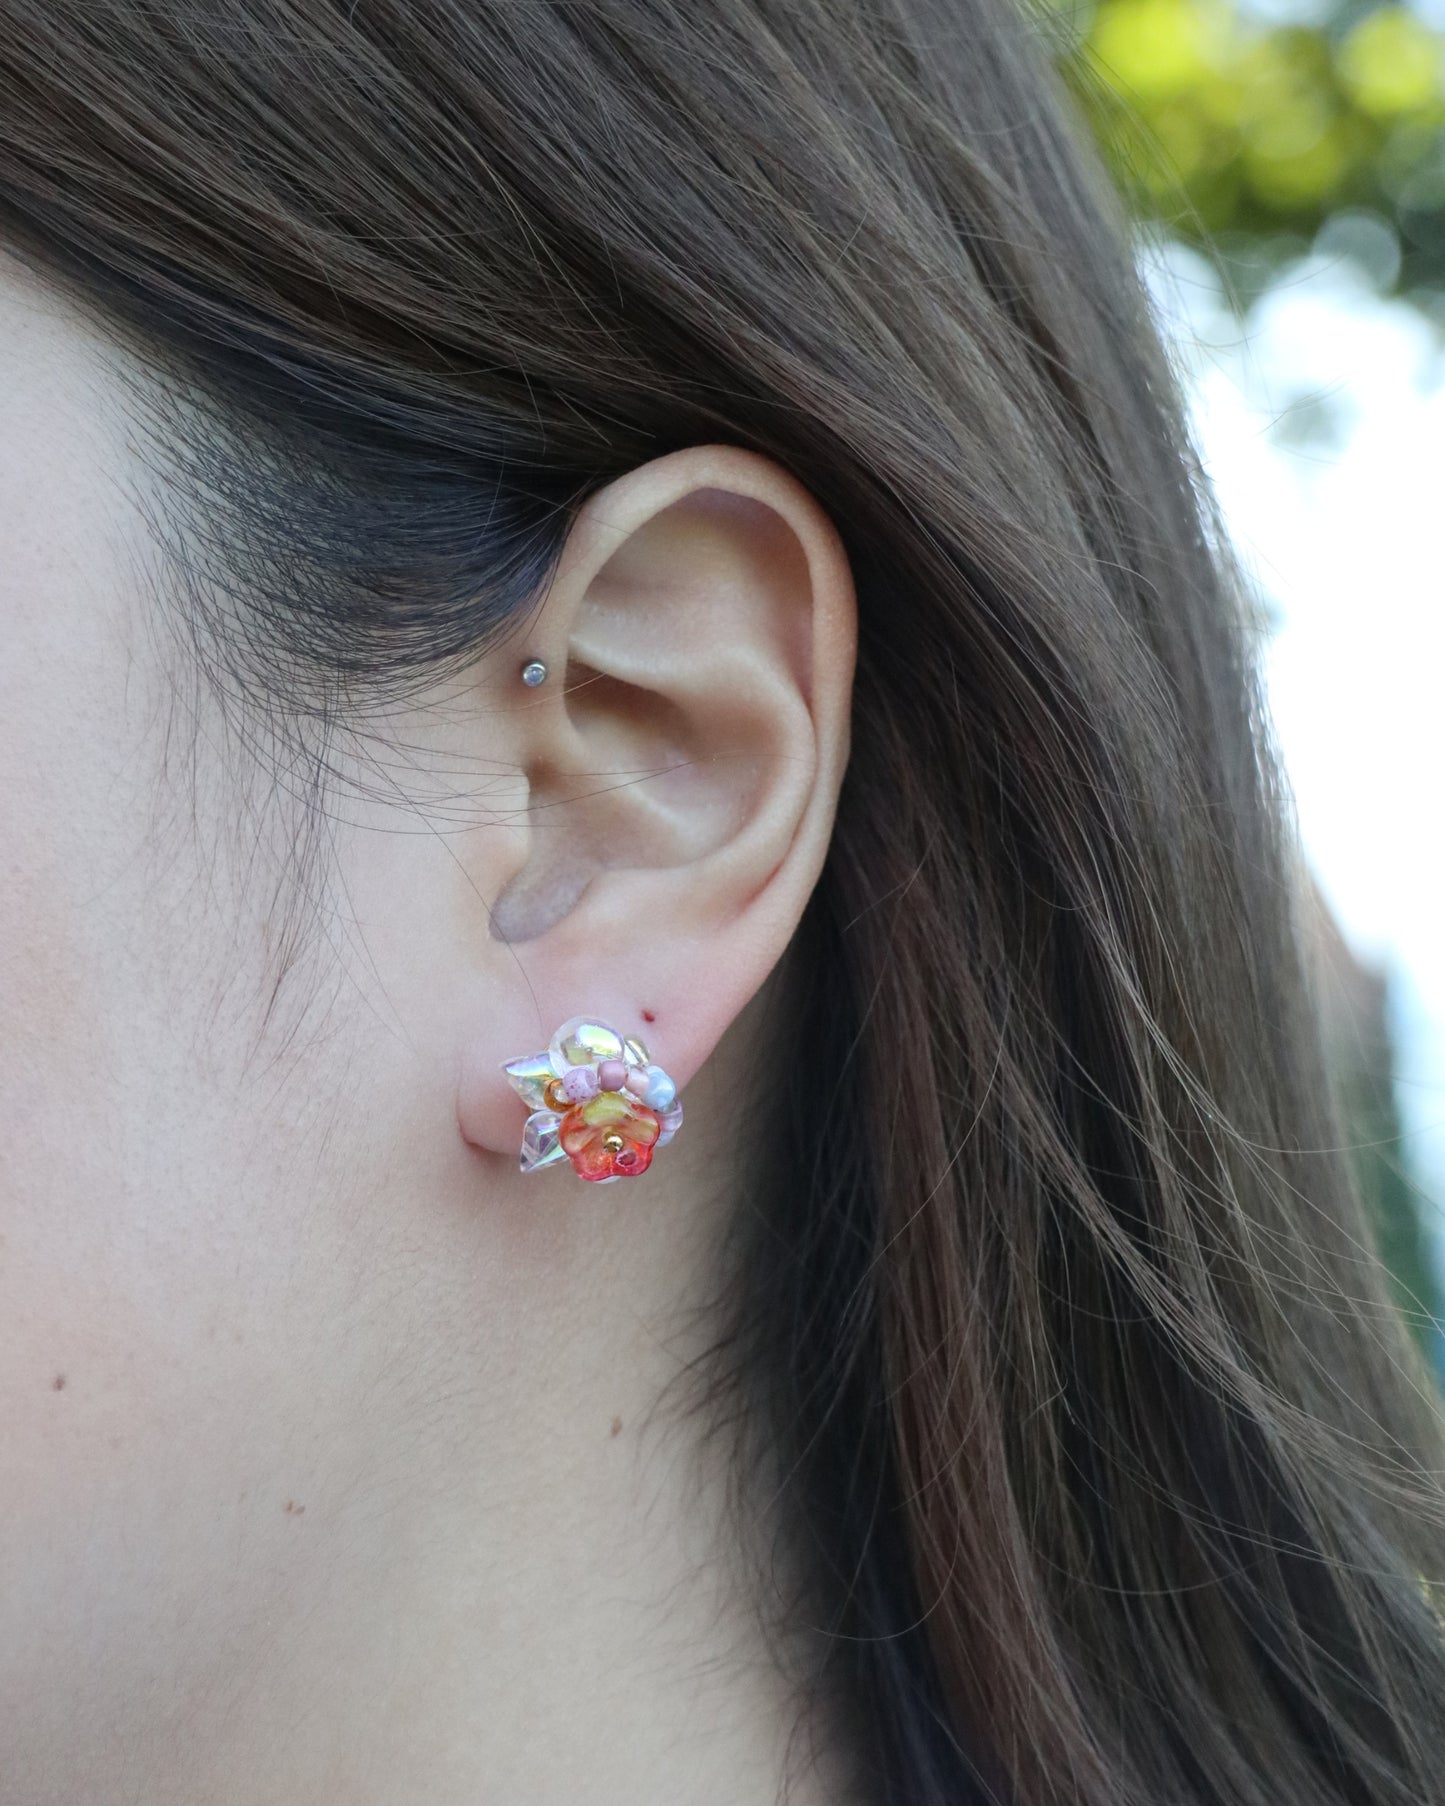 bloom flower stud earrings worn on ear